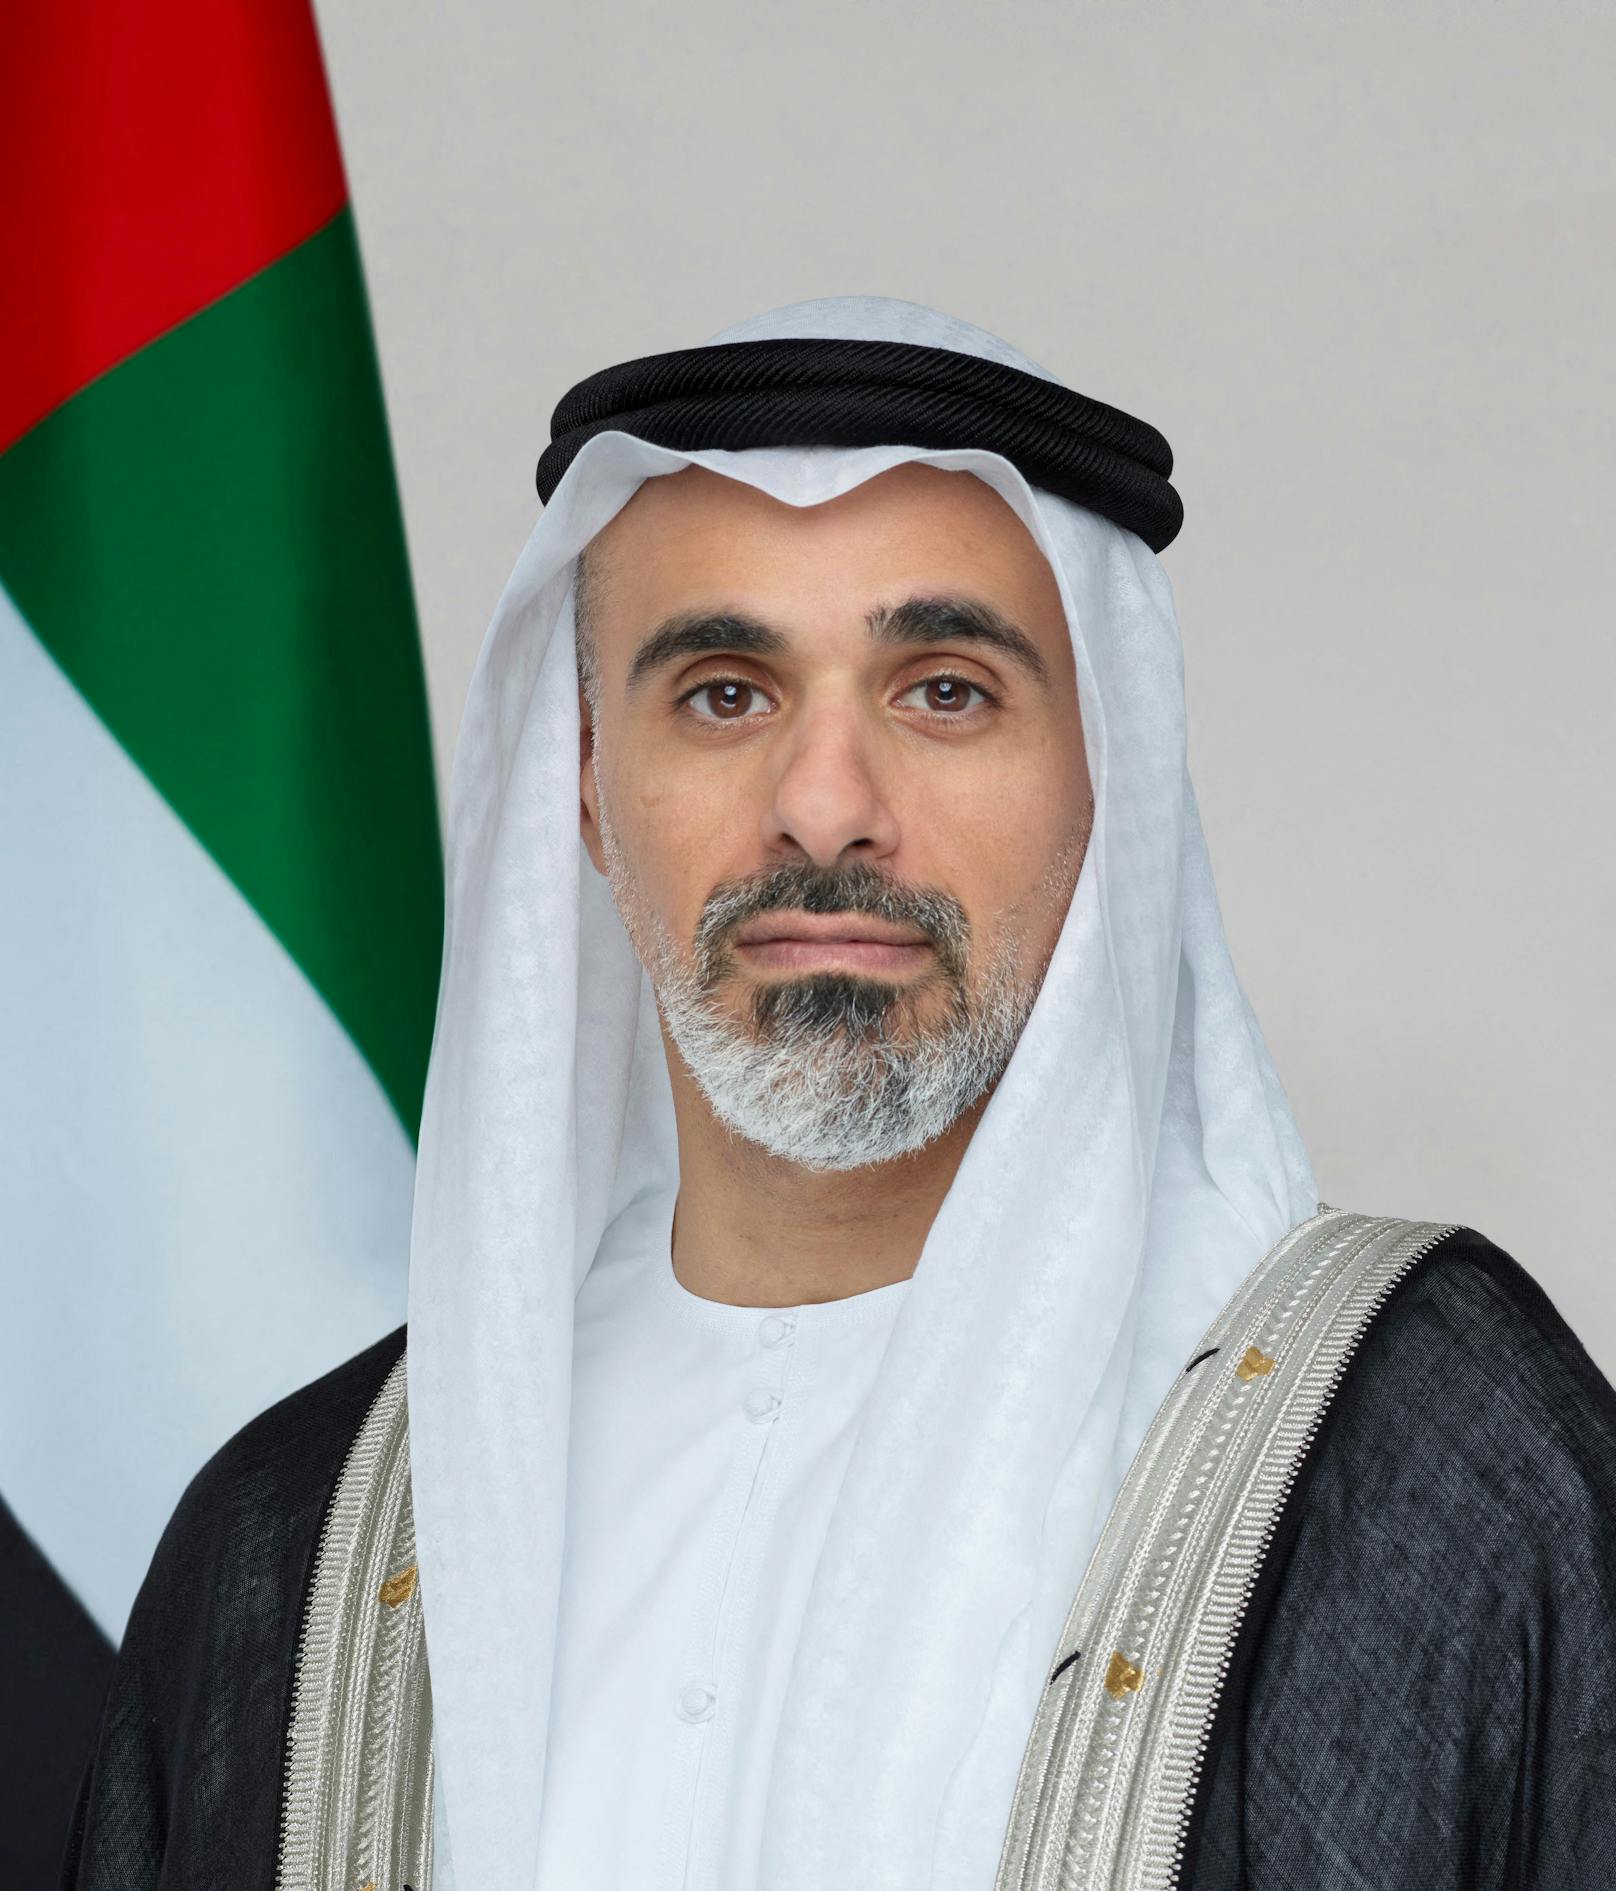 Kahled bin Mohammed bin Zayed ist zum neuen Kronprinzen von Abu Dhabi ernannt worden,